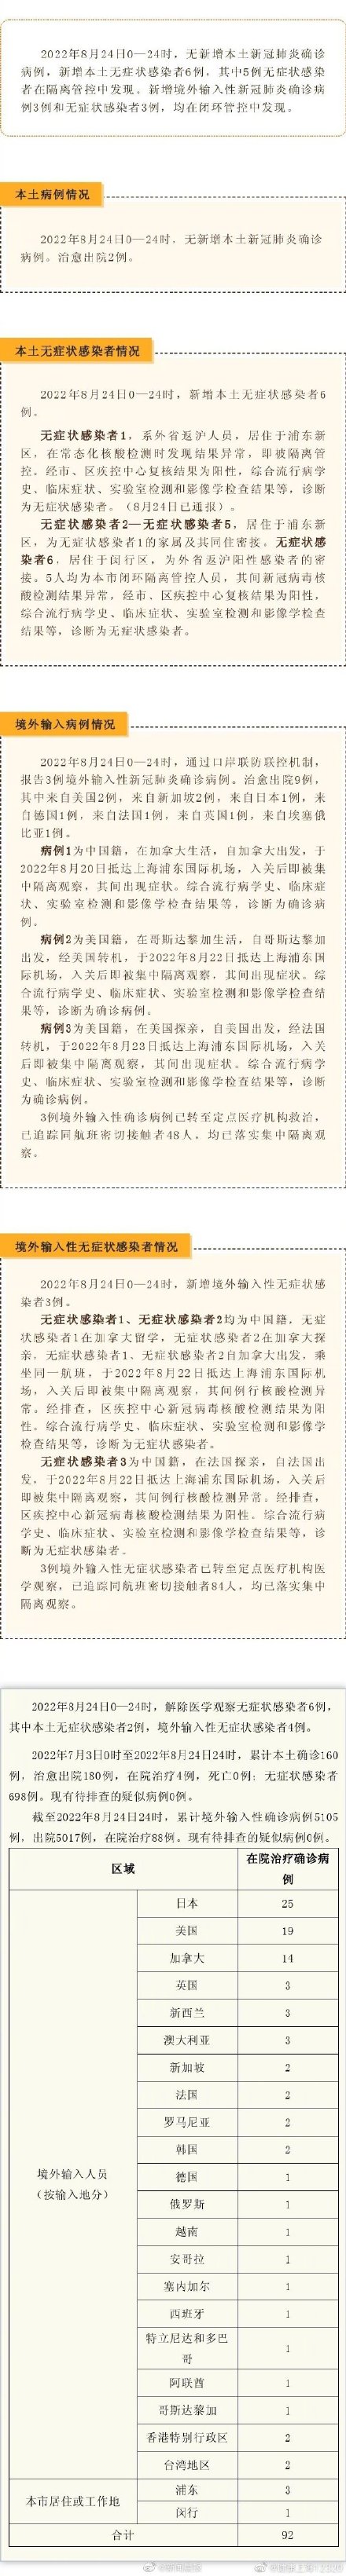 上海昨日无新增本土确诊病例、新增本土无症状感染者6例